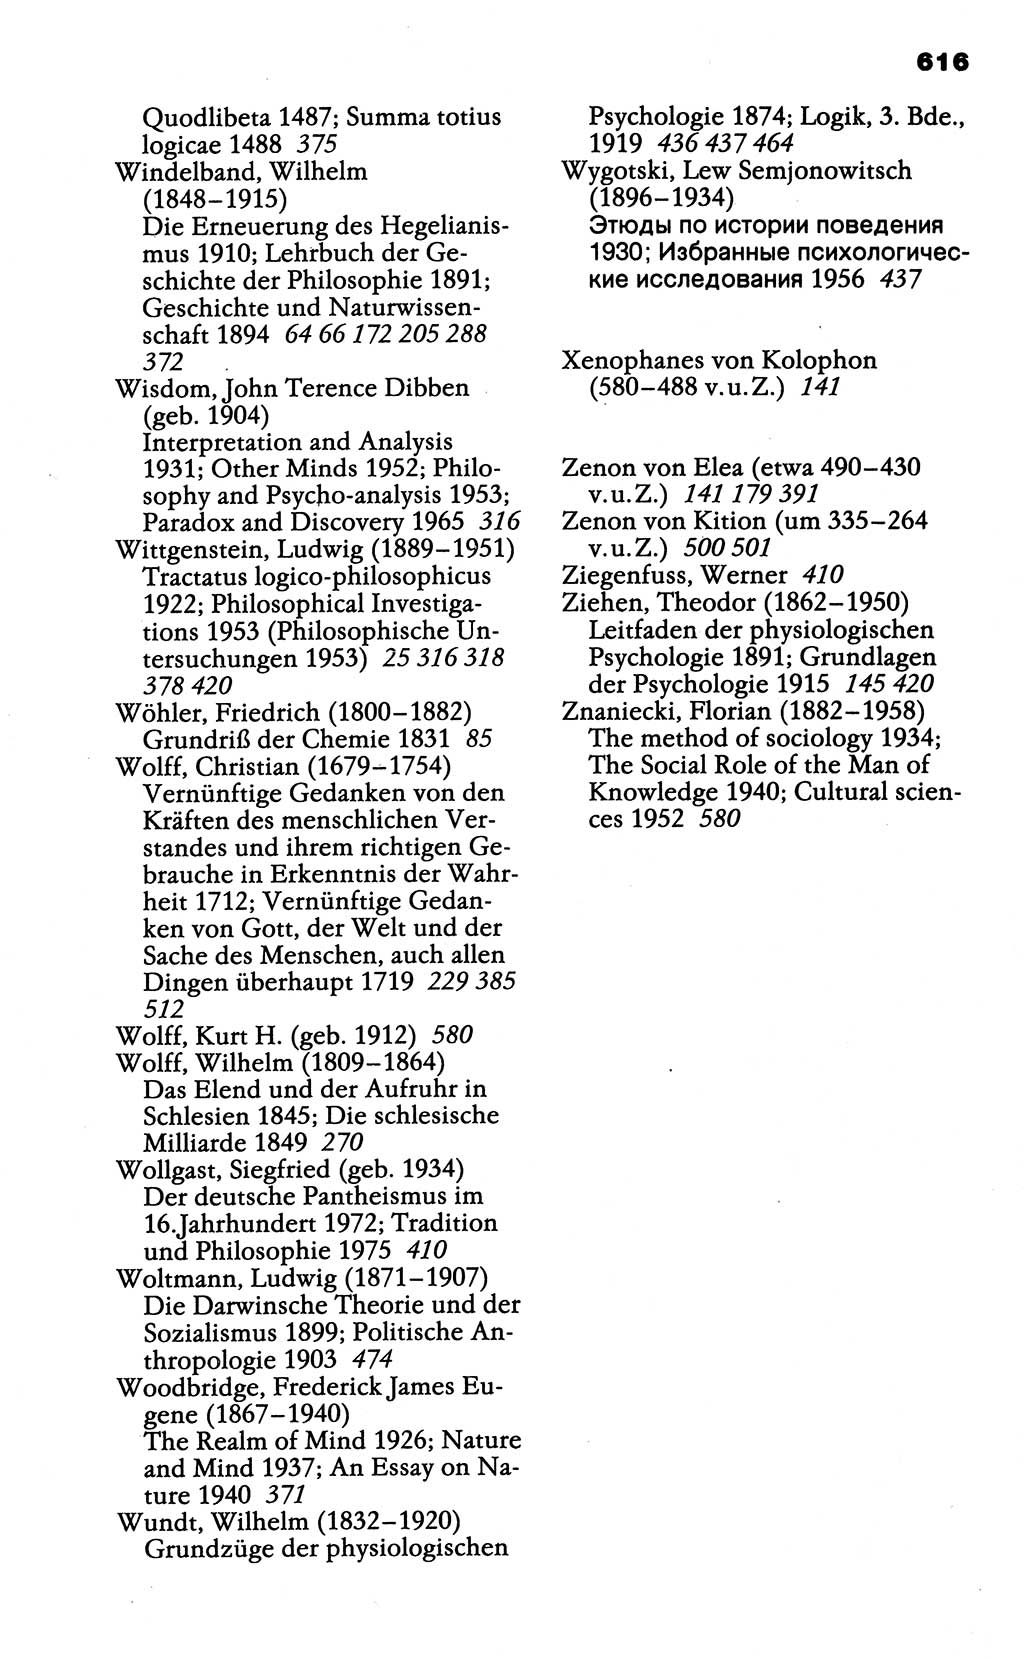 Wörterbuch der marxistisch-leninistischen Philosophie [Deutsche Demokratische Republik (DDR)] 1985, Seite 616 (Wb. ML Phil. DDR 1985, S. 616)